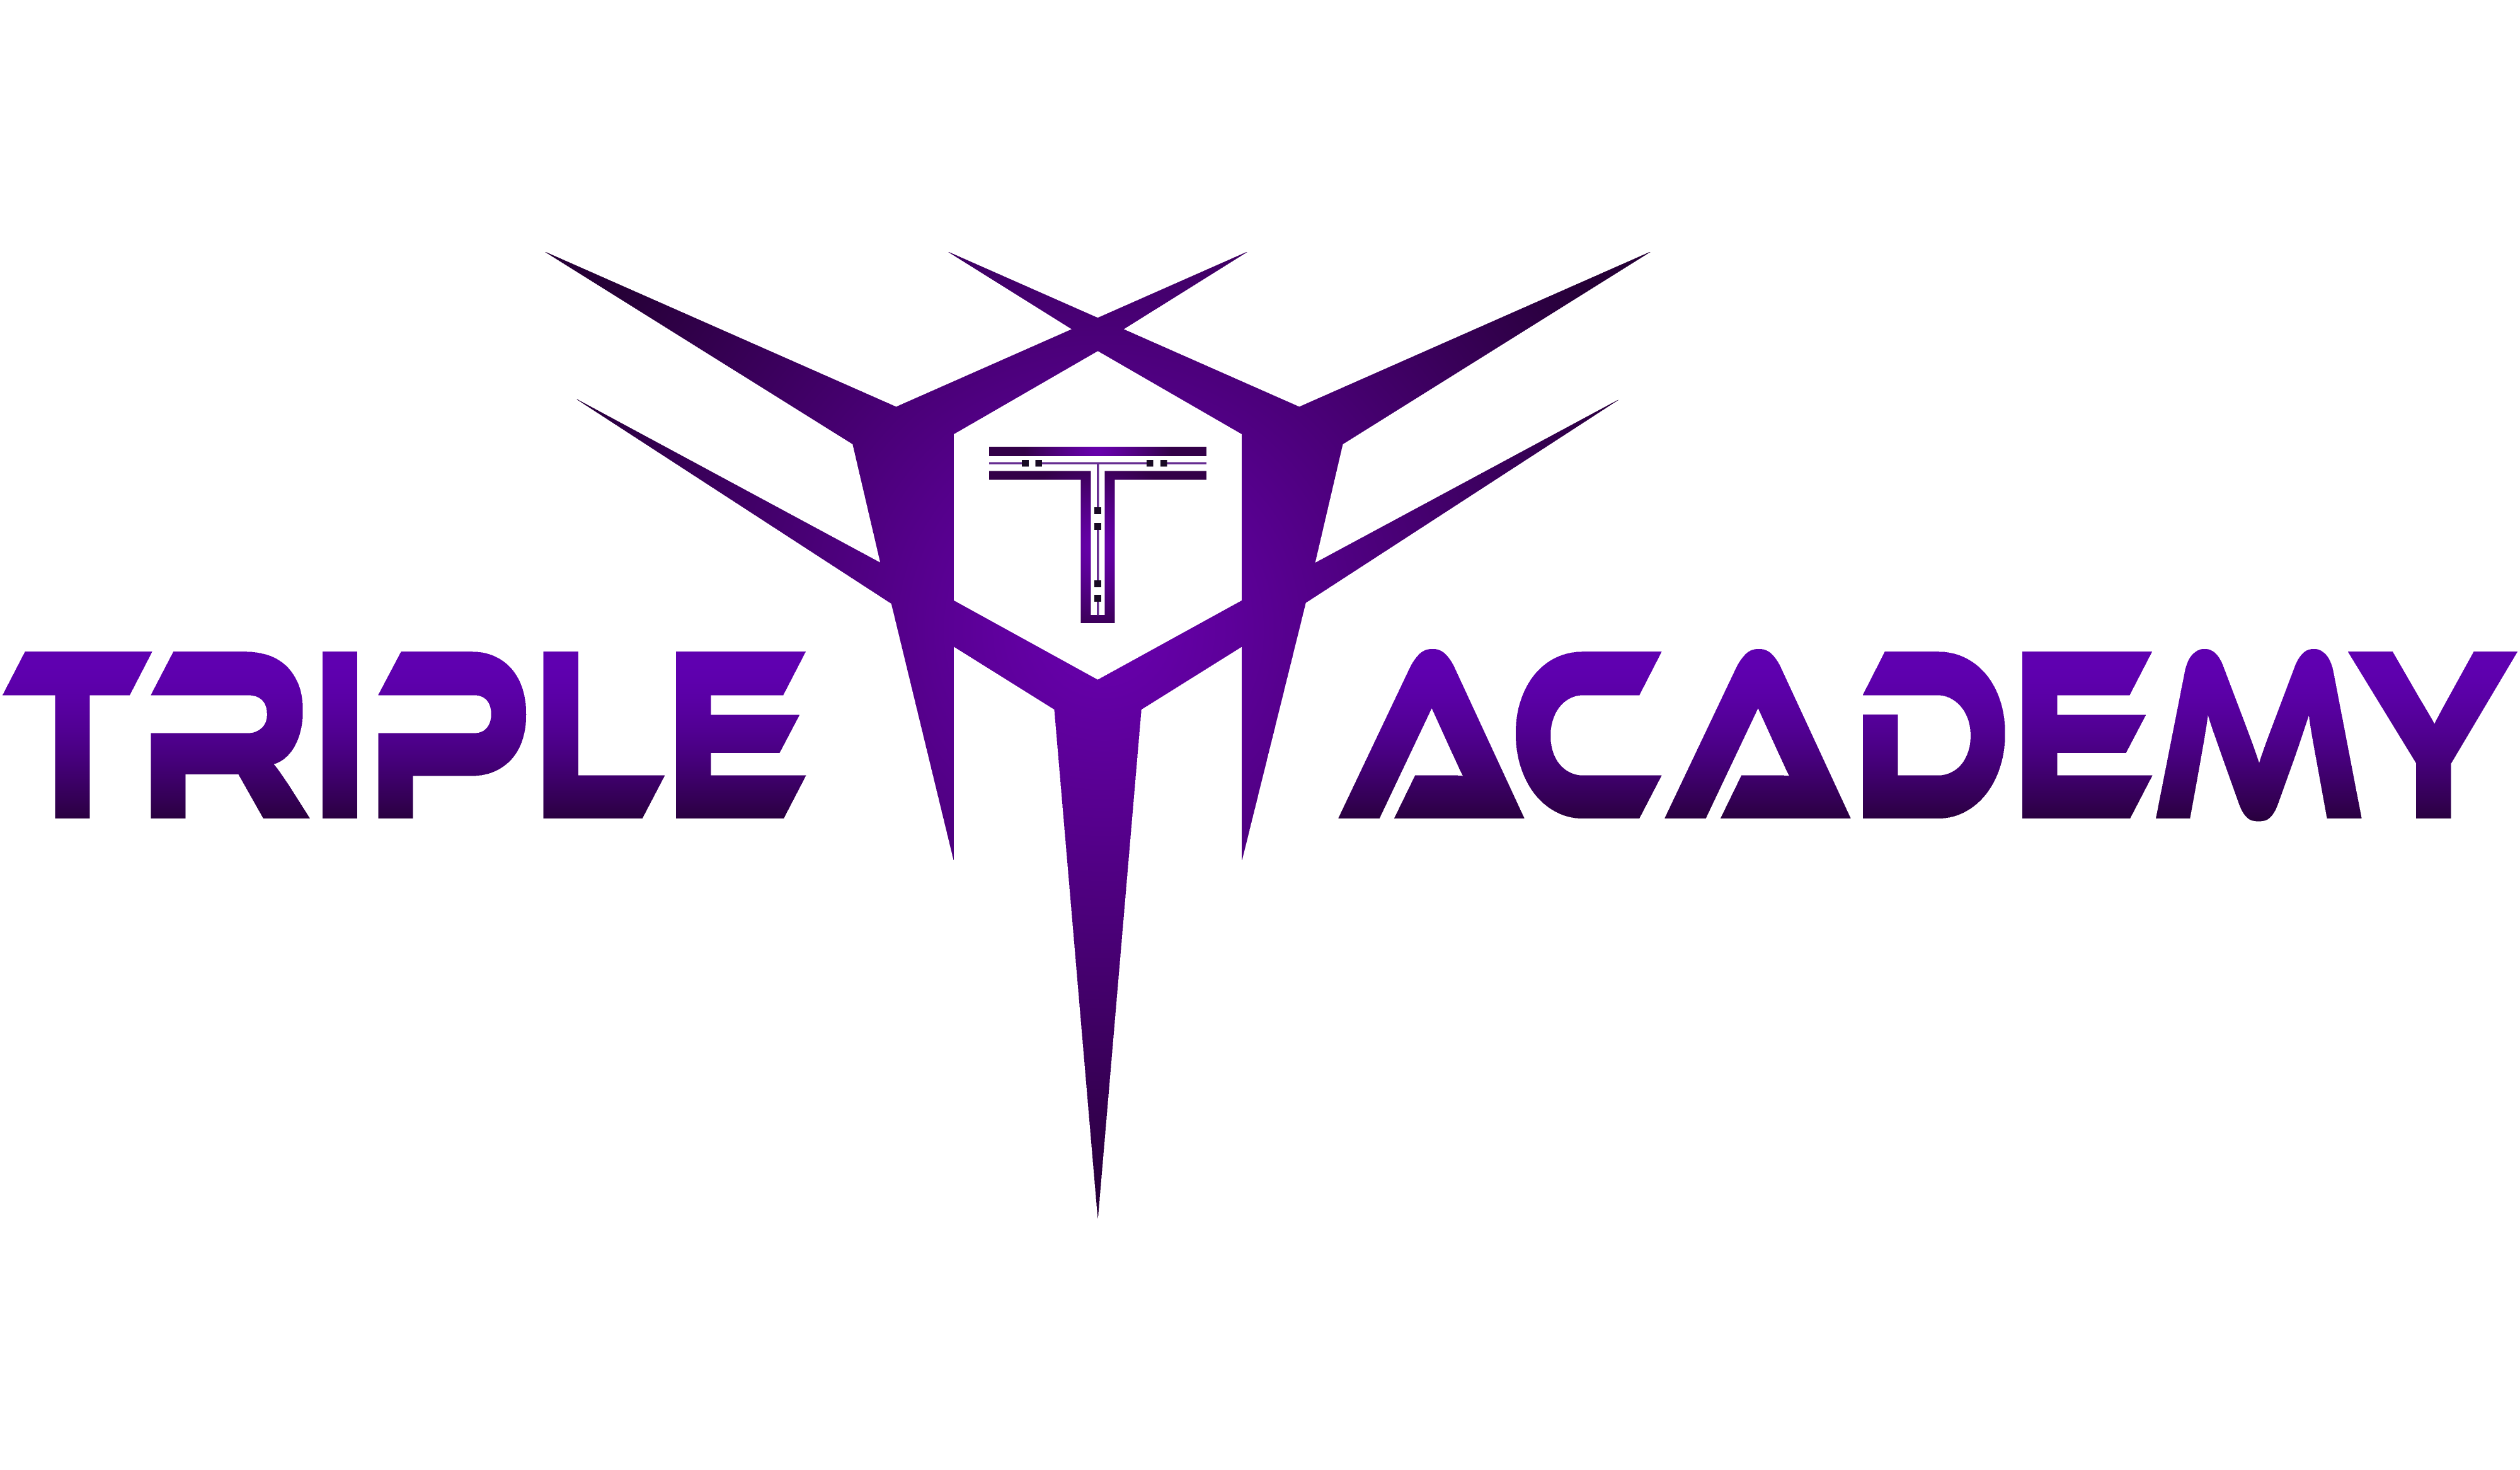 Triple T Academy New logo 2